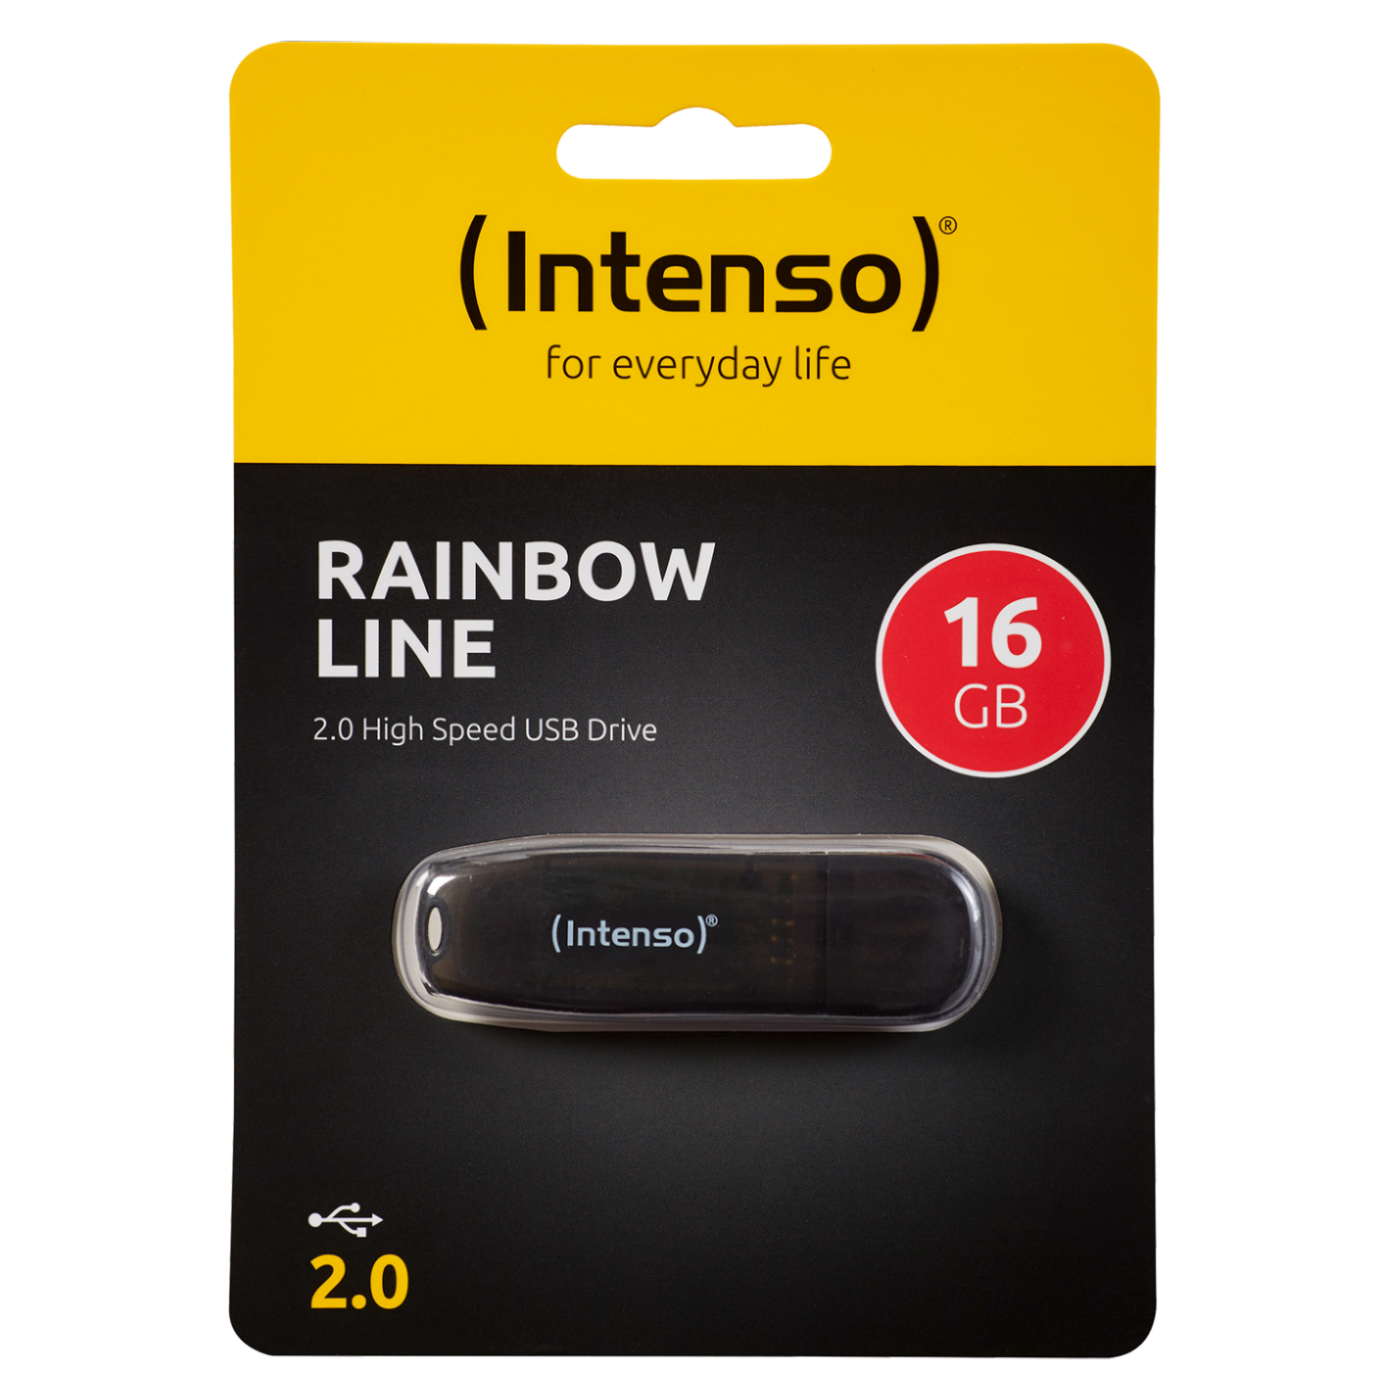 USB2.0-16GB/Rainbow